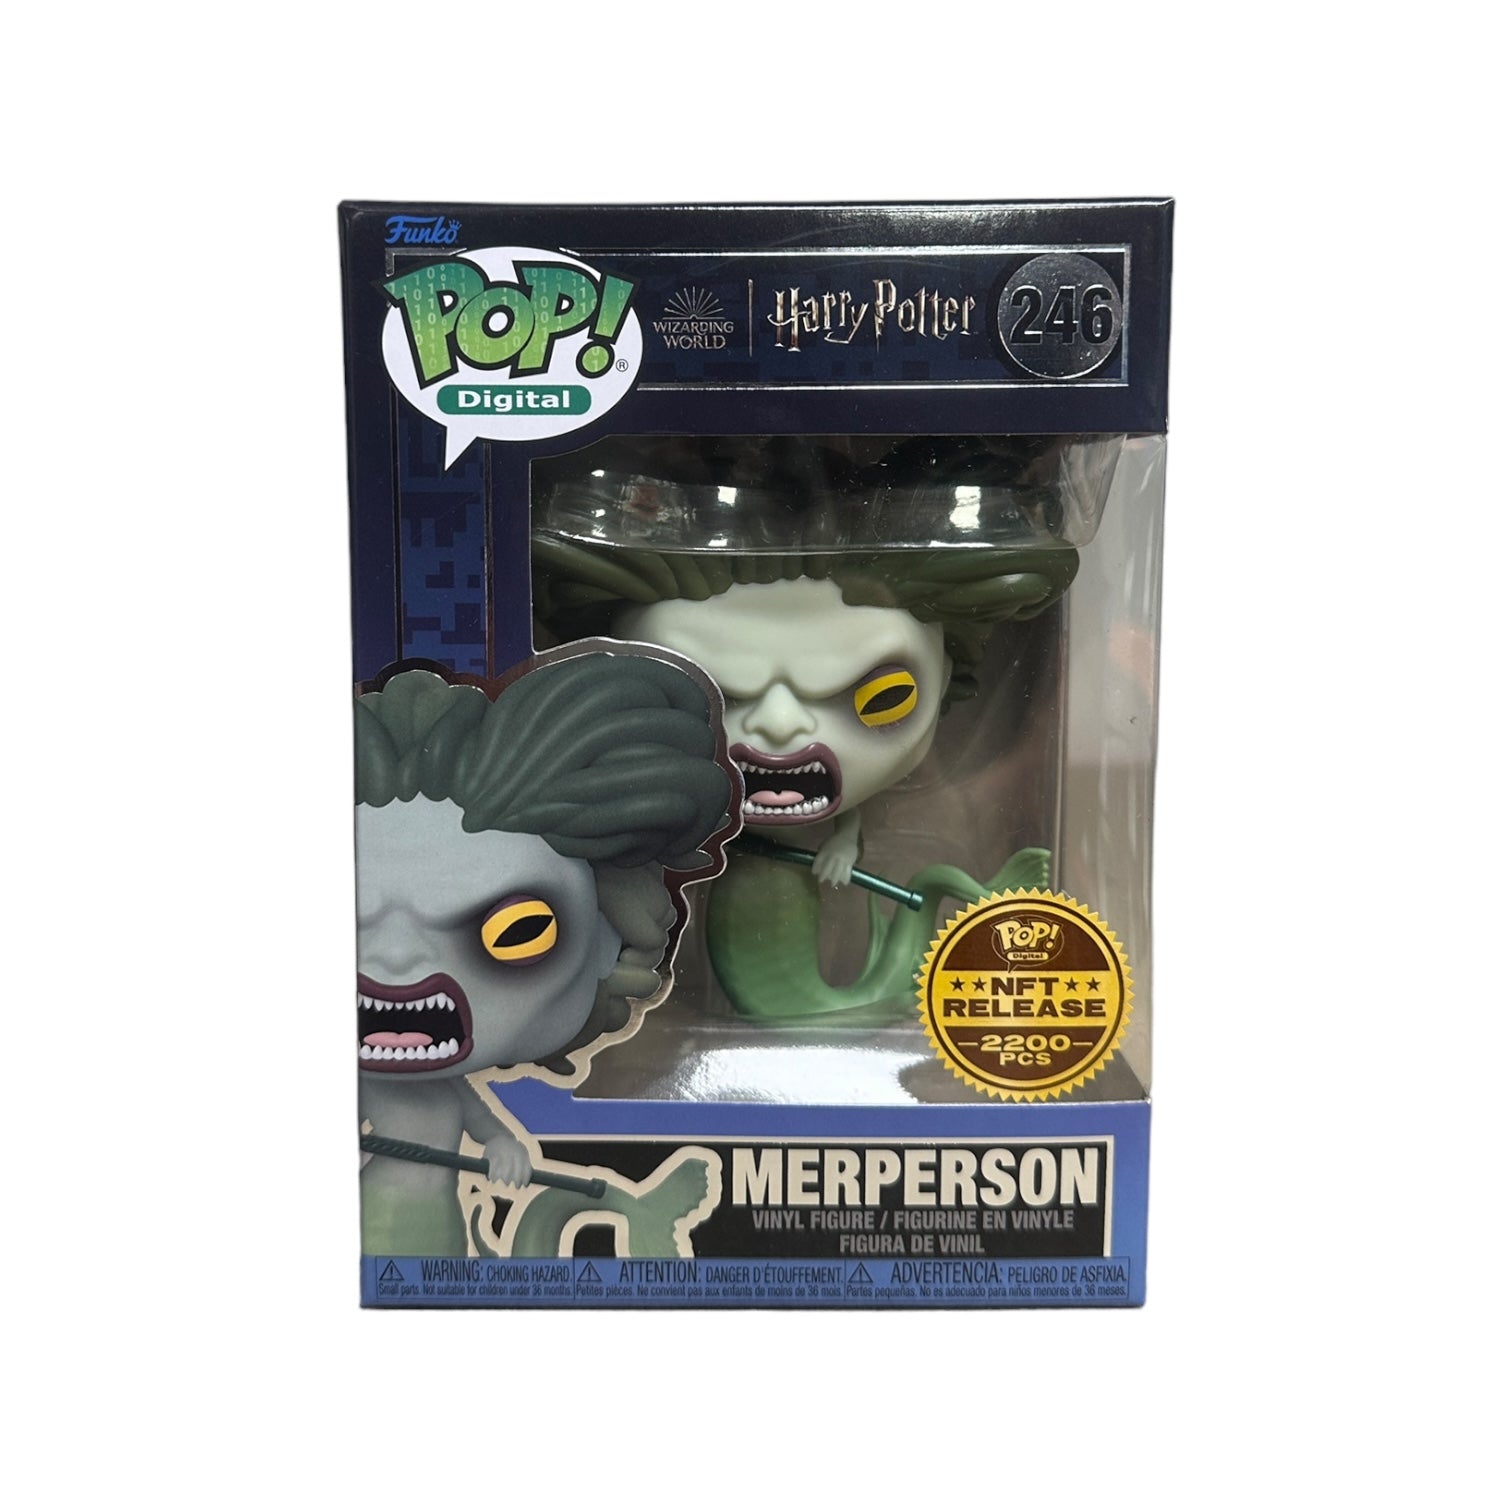 Merperson #246 Funko Pop! - Harry Potter - NFT Release Exclusive LE2200 Pcs - Condition 9/10